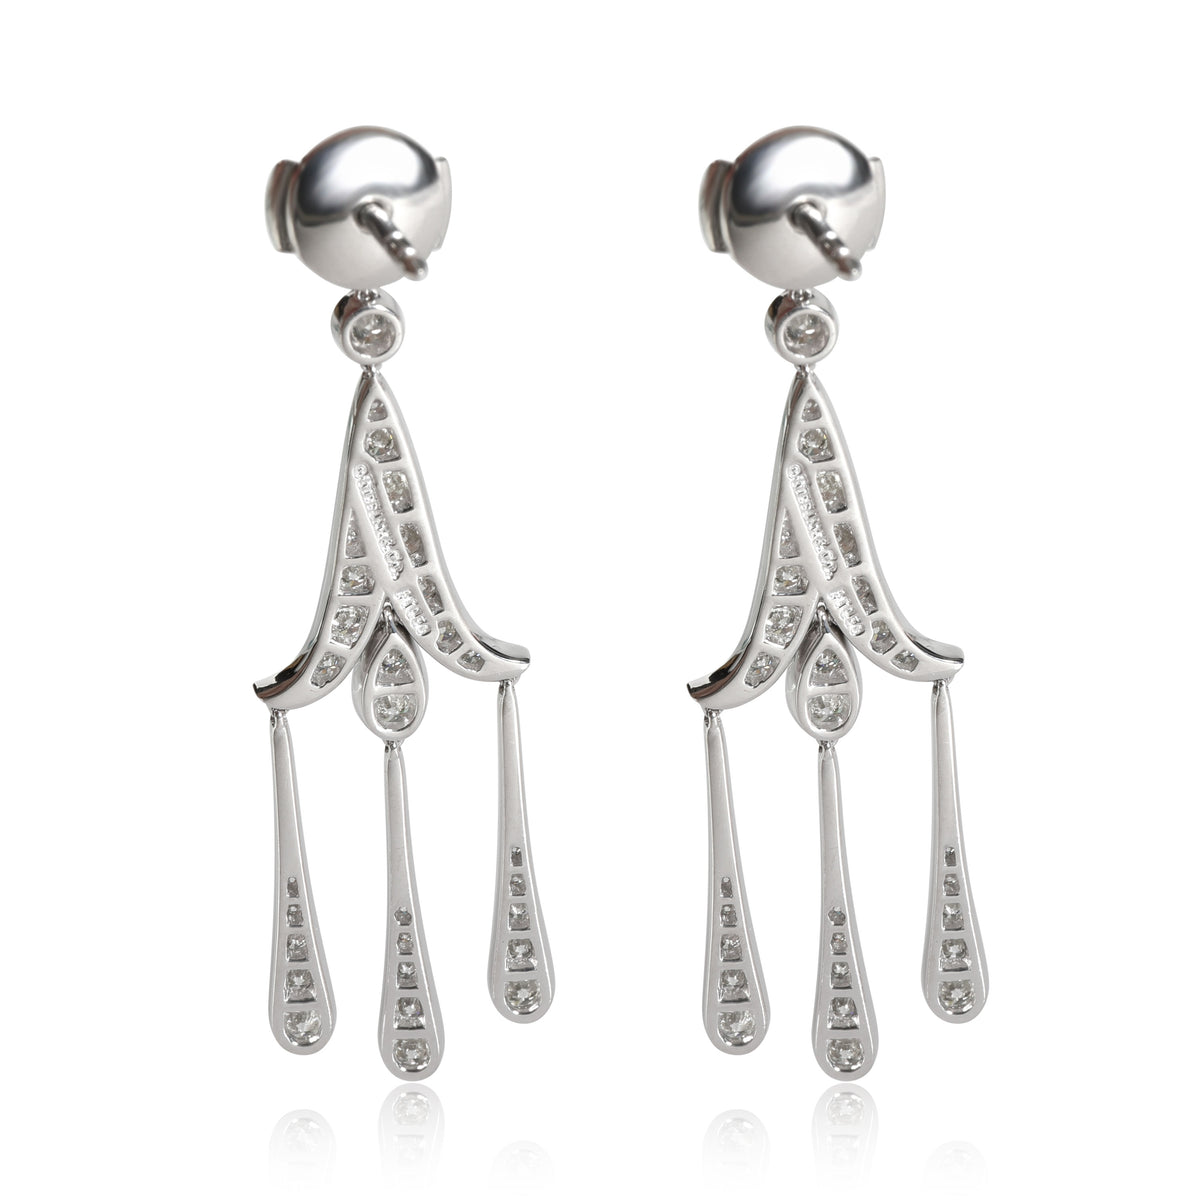 Tiffany & Co. Legacy Diamond Earrings in 18K White Gold 1.75 CTW